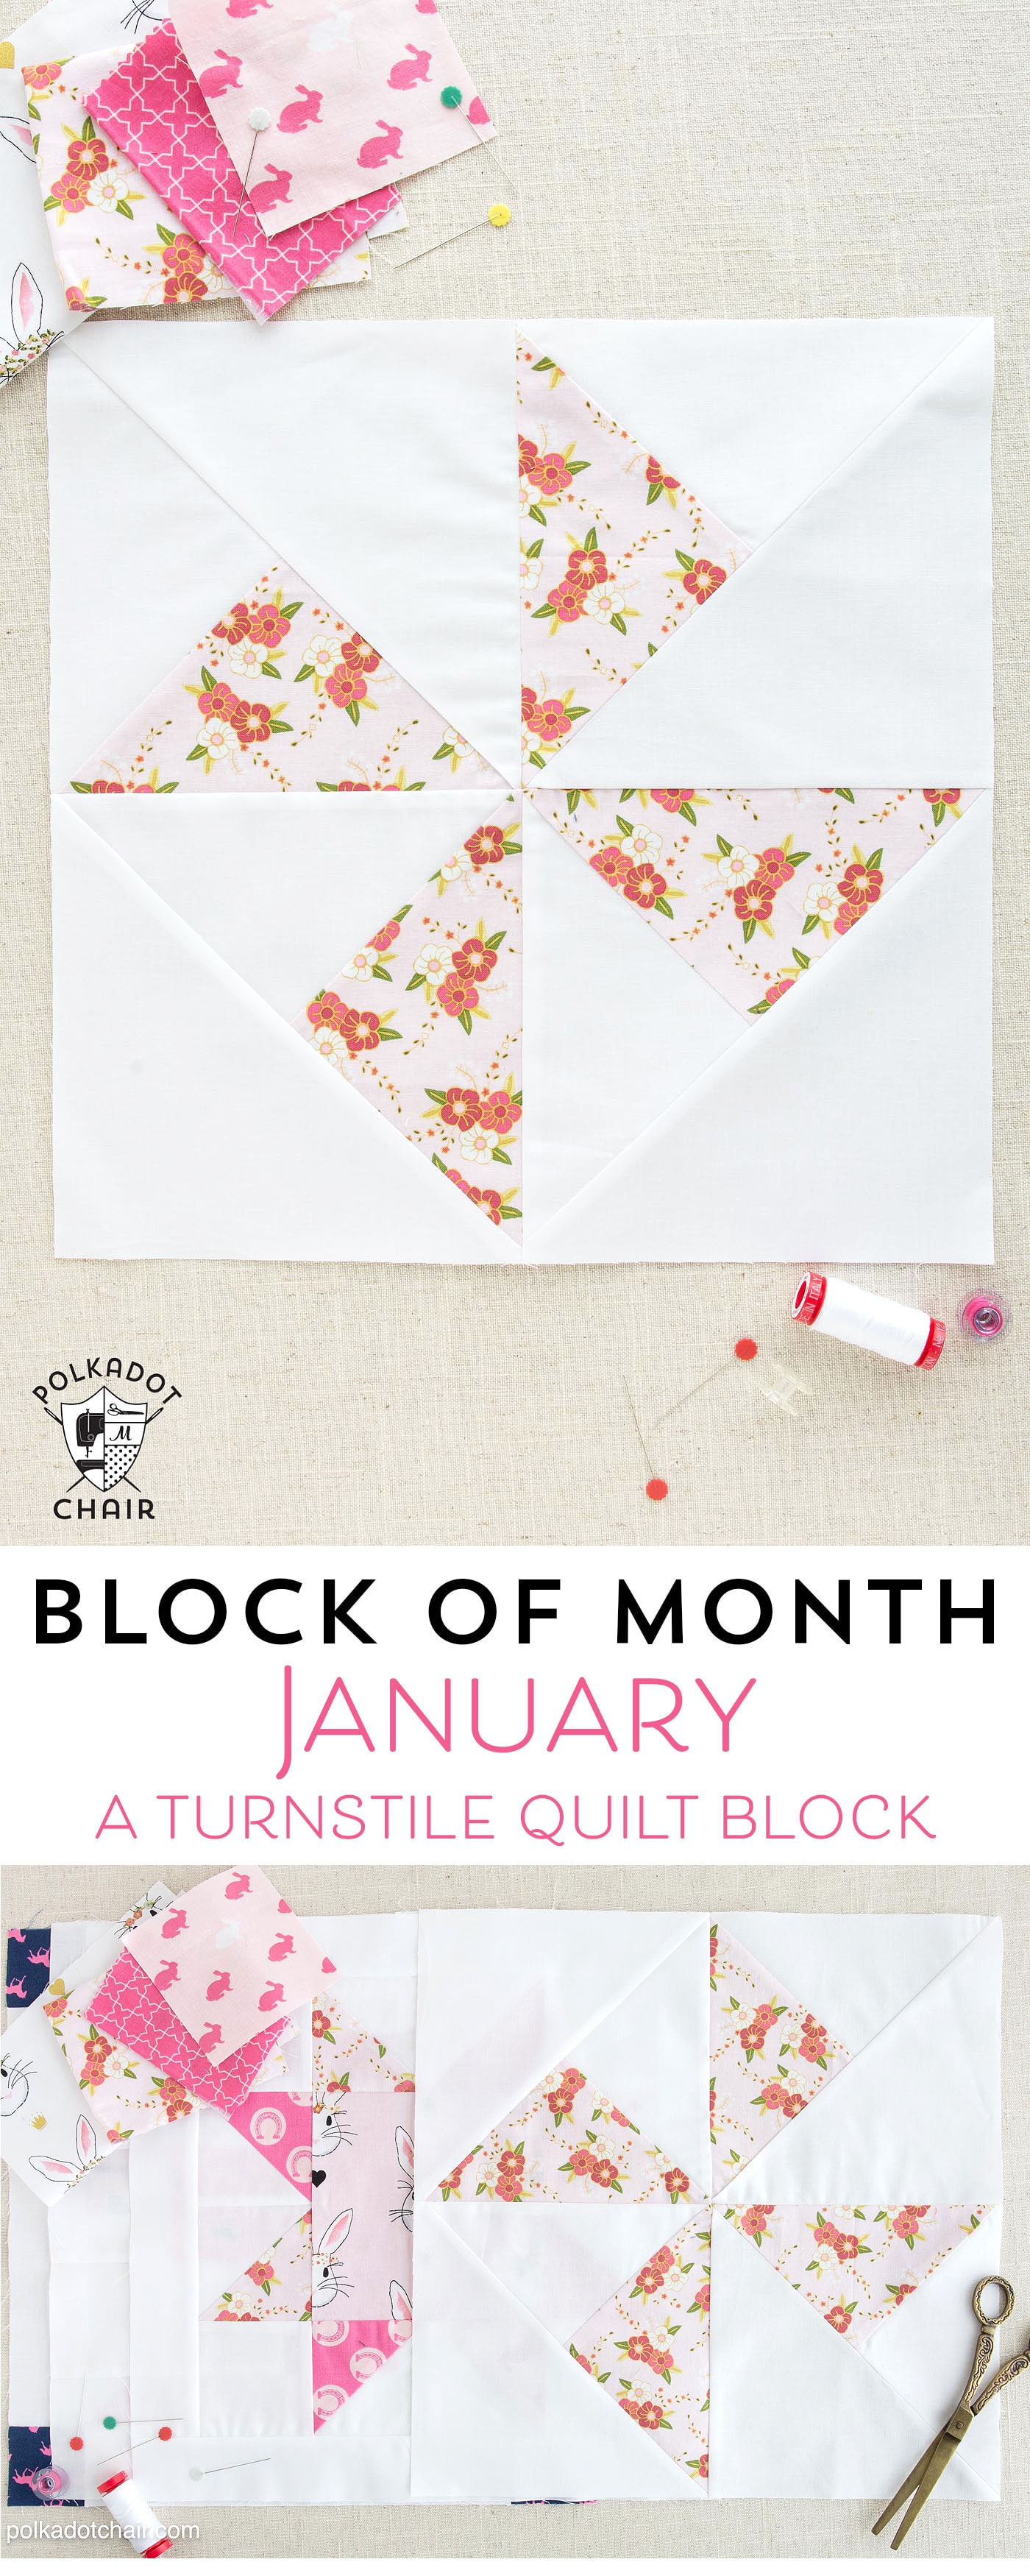 Le bloc du mois de janvier sur polkadotchair.com - Apprenez à fabriquer un simple bloc de courtepointe à tourniquet - complétez un bloc de courtepointe chaque mois pour vous fabriquer une courtepointe !